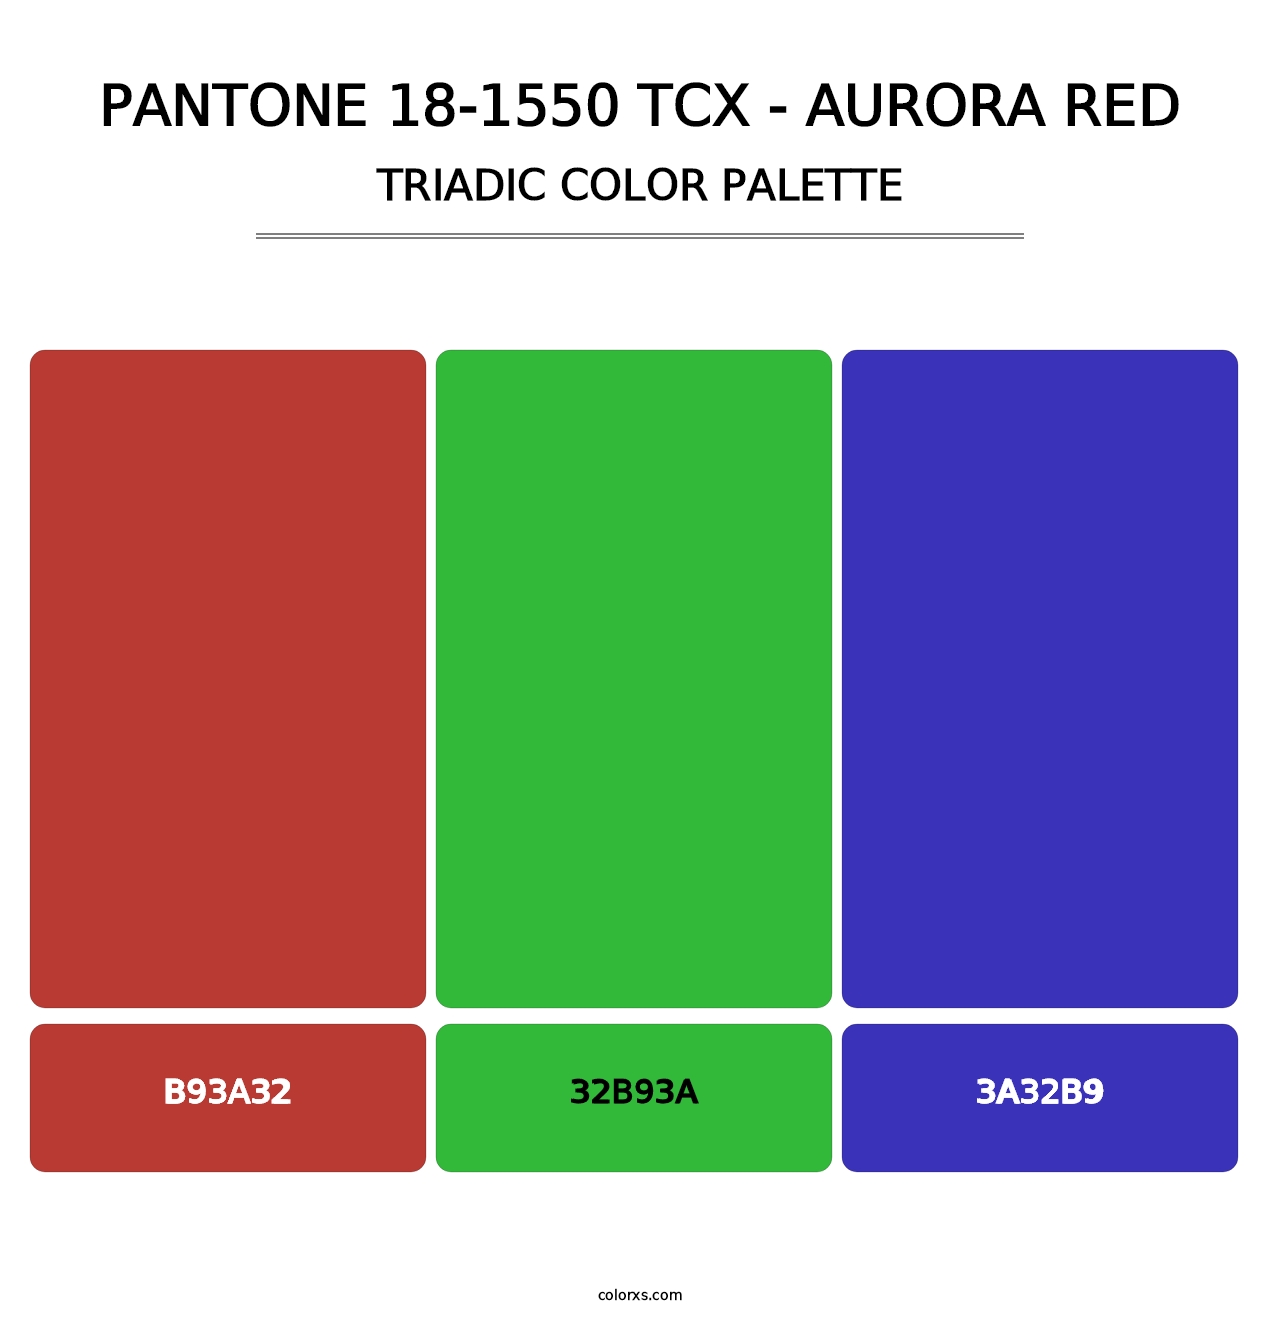 PANTONE 18-1550 TCX - Aurora Red - Triadic Color Palette